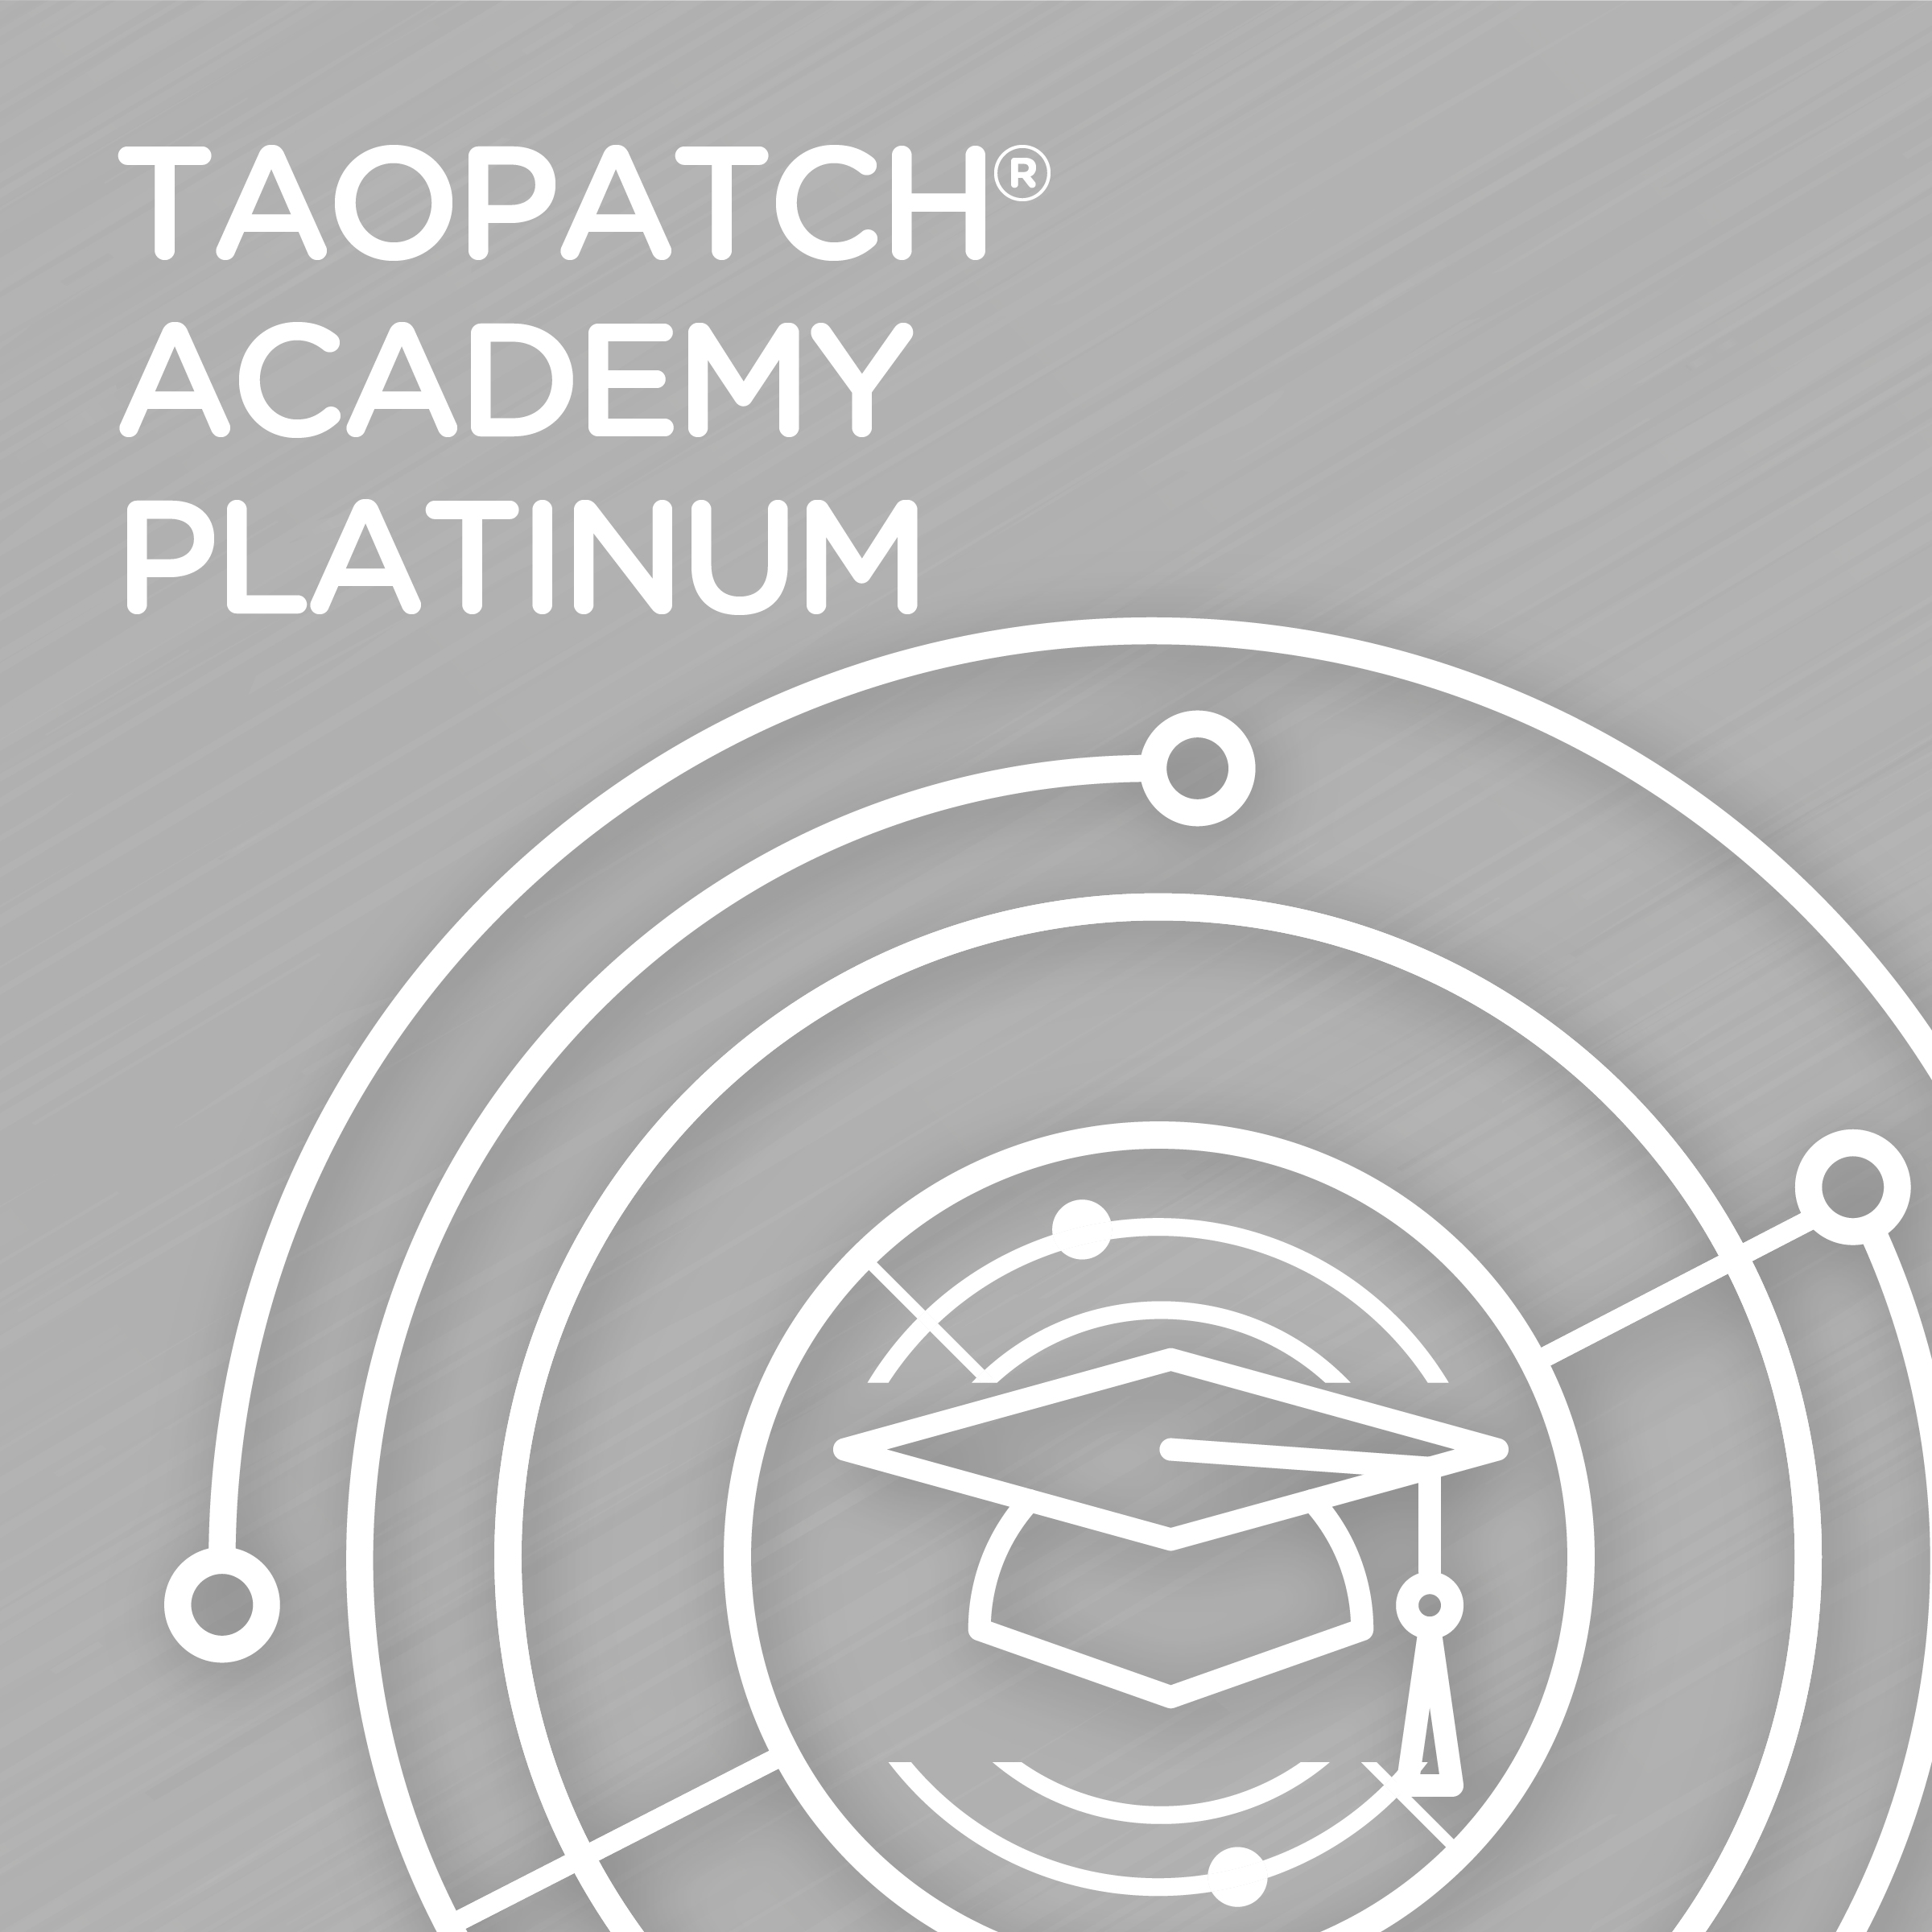 Taopatch academy